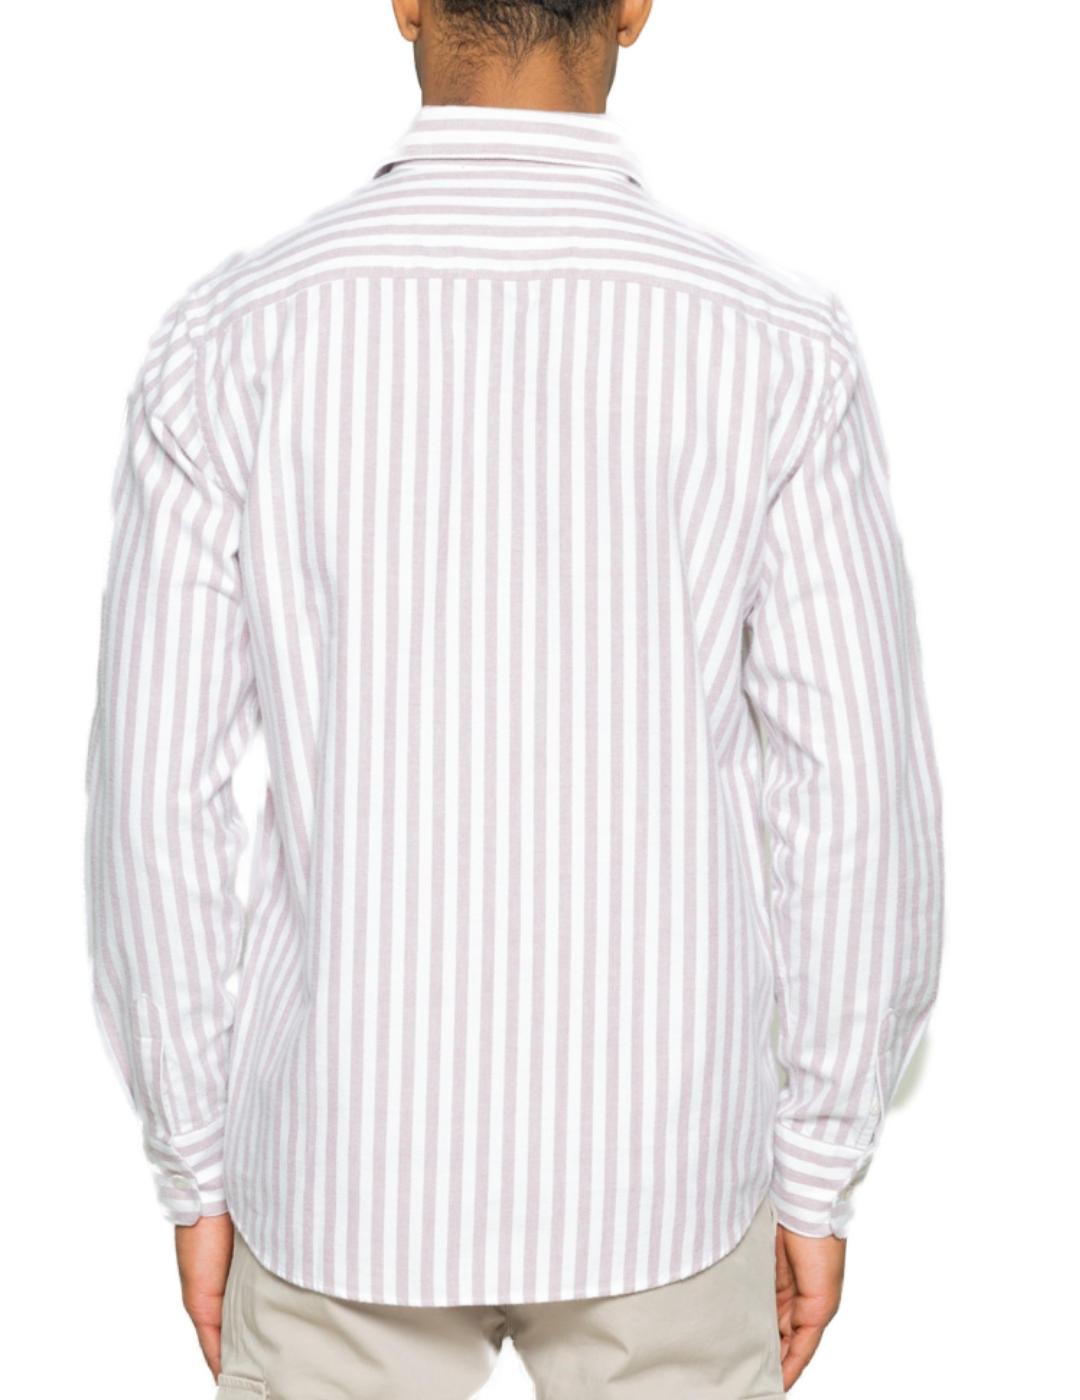 Camisa Scotta polera stripes burdeos y blanca de hombre